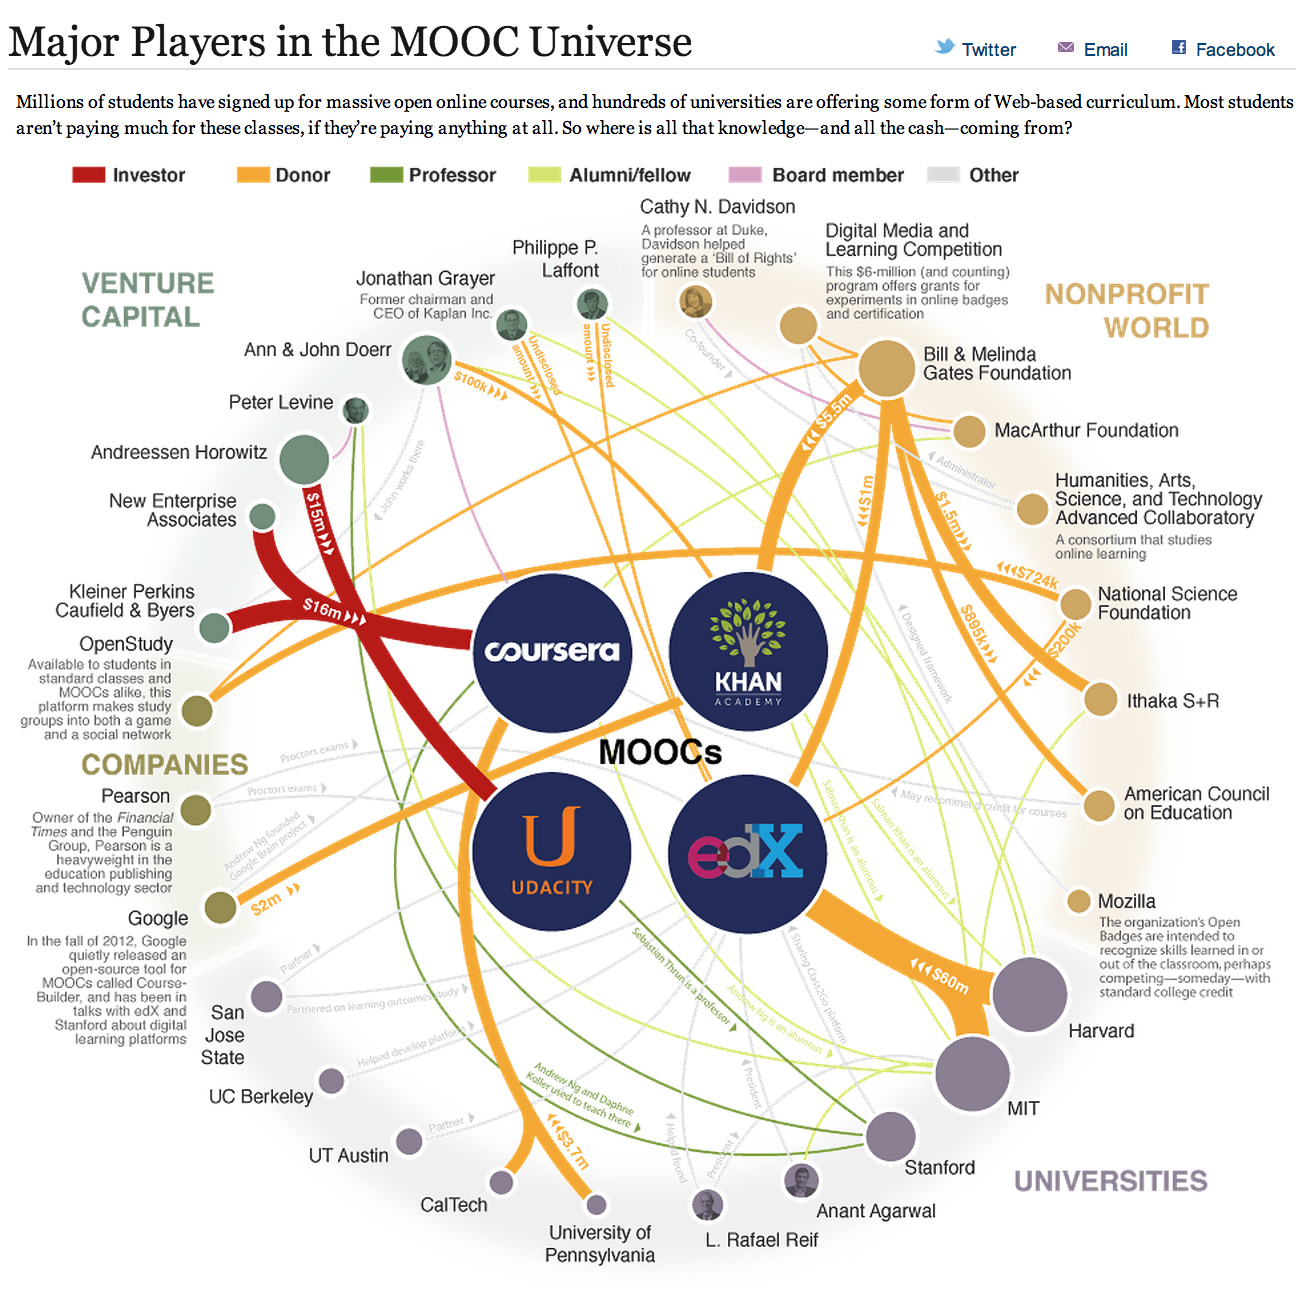 MOOC Universe